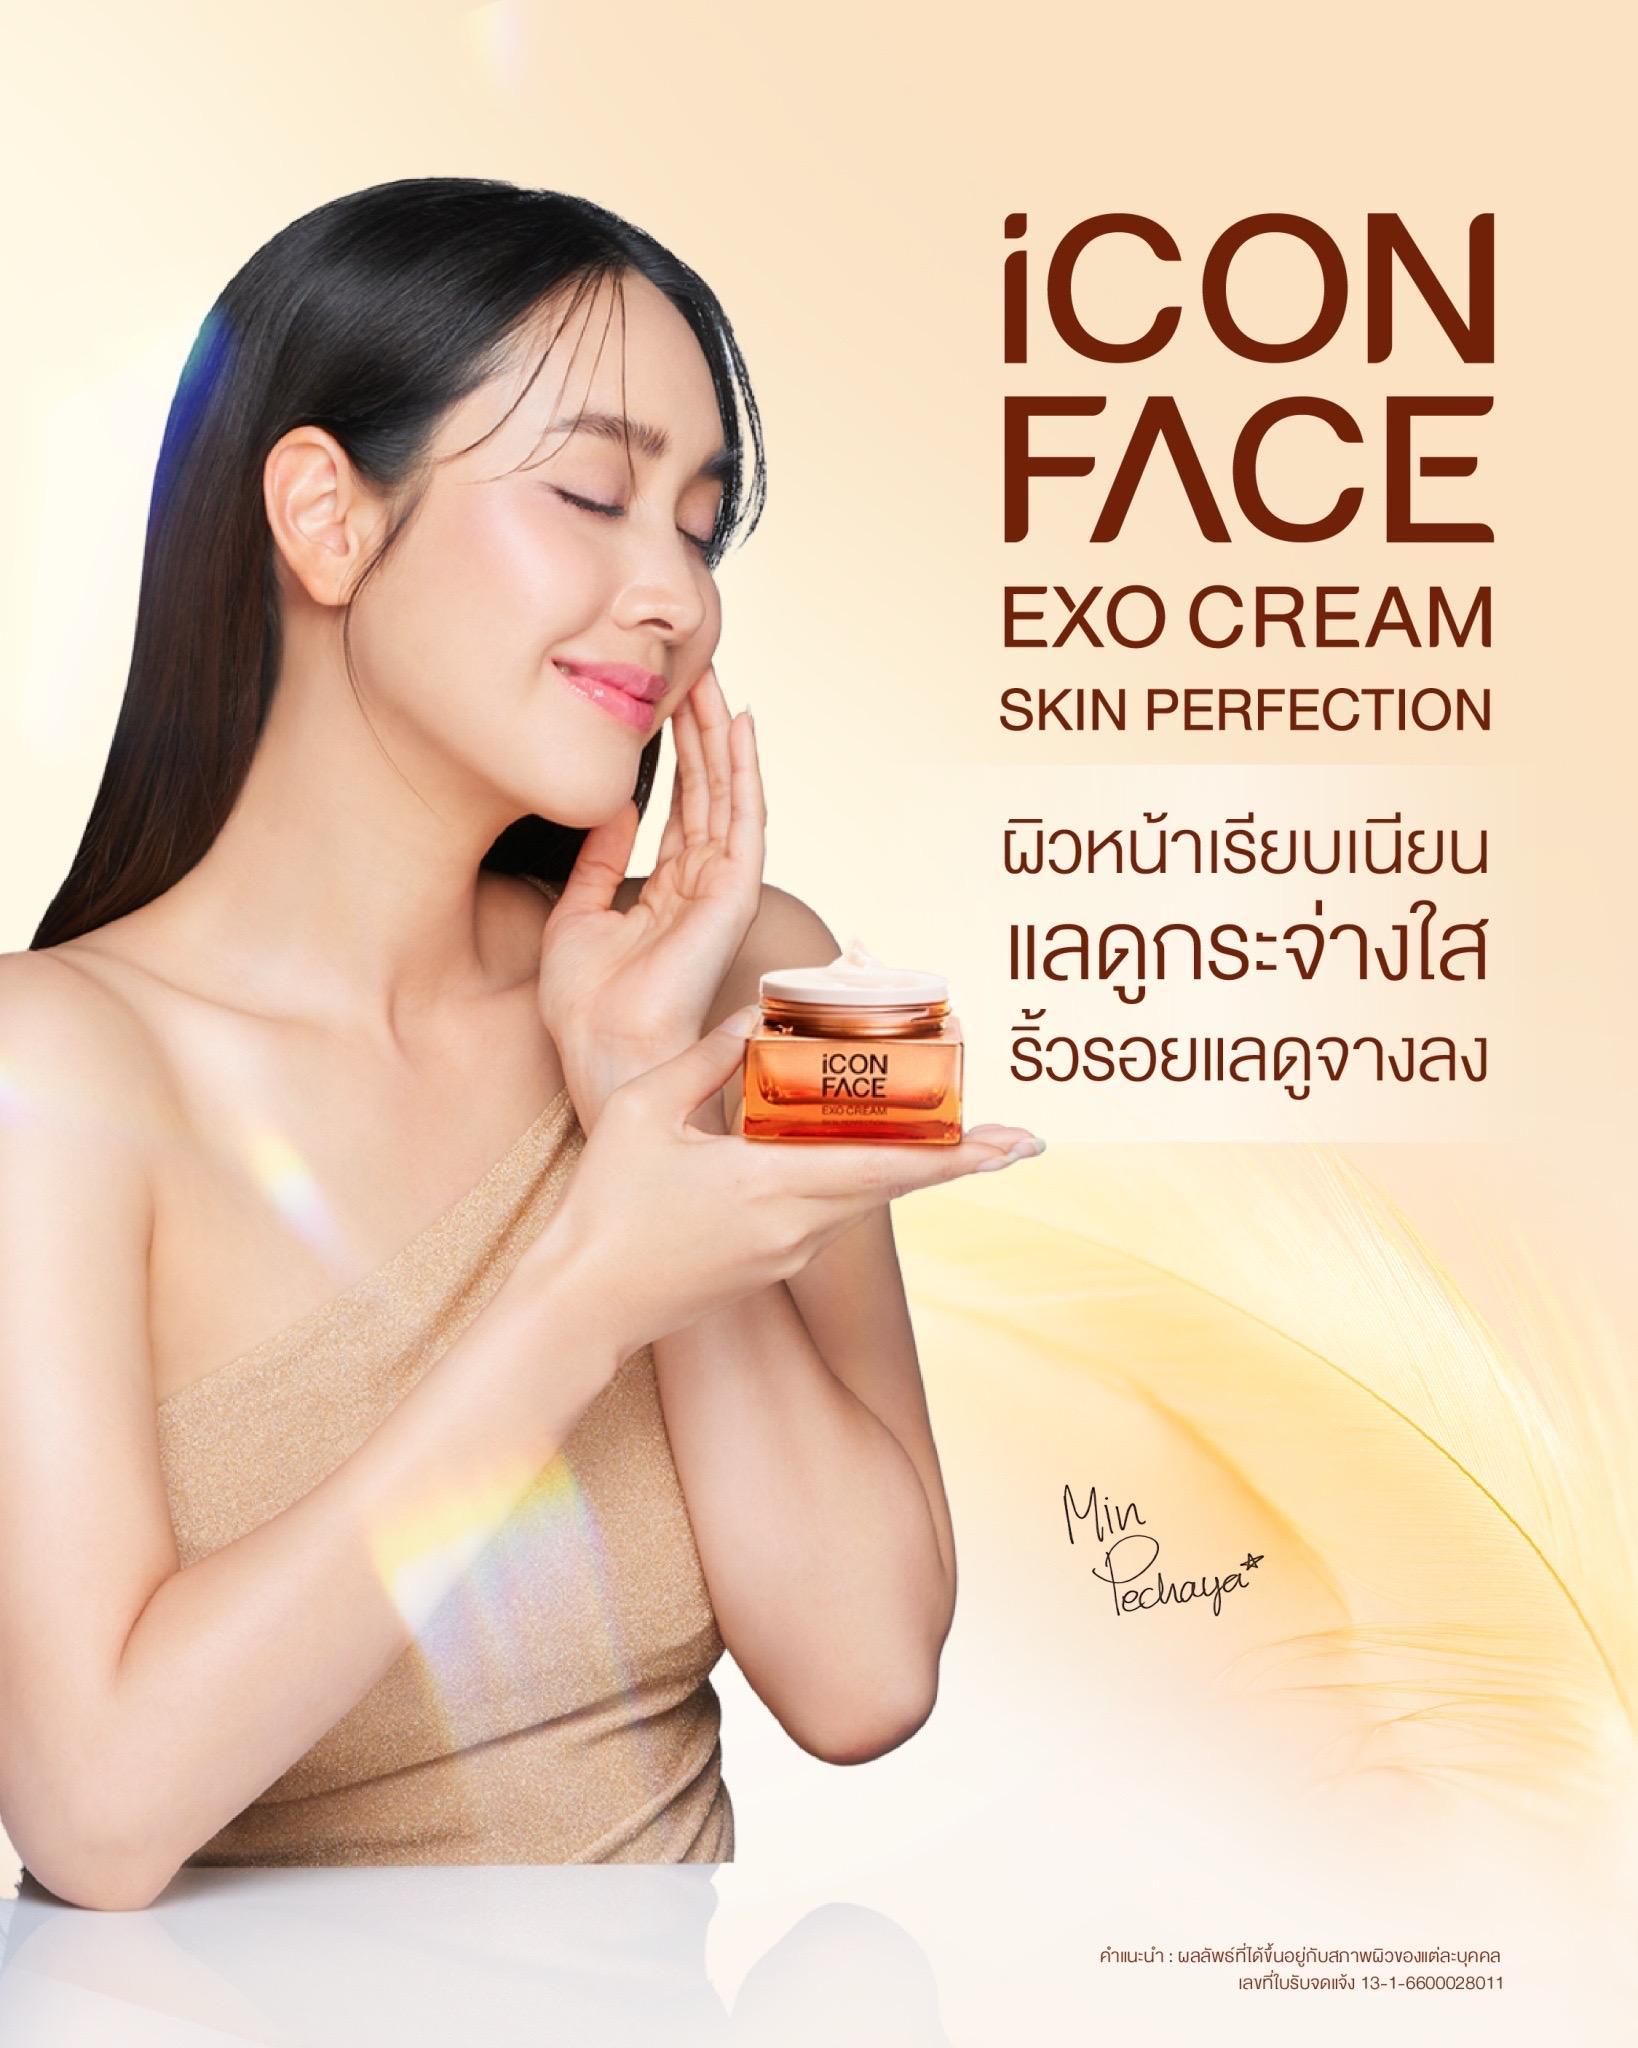 ภาพหน้าปก ครีมหน้าฉ่ำ iCon Face Exo Cream Skin Perfection ผลิตภัณฑ์ดูแลผิวหน้าเกรดพรีเมี่ยม ที่:0